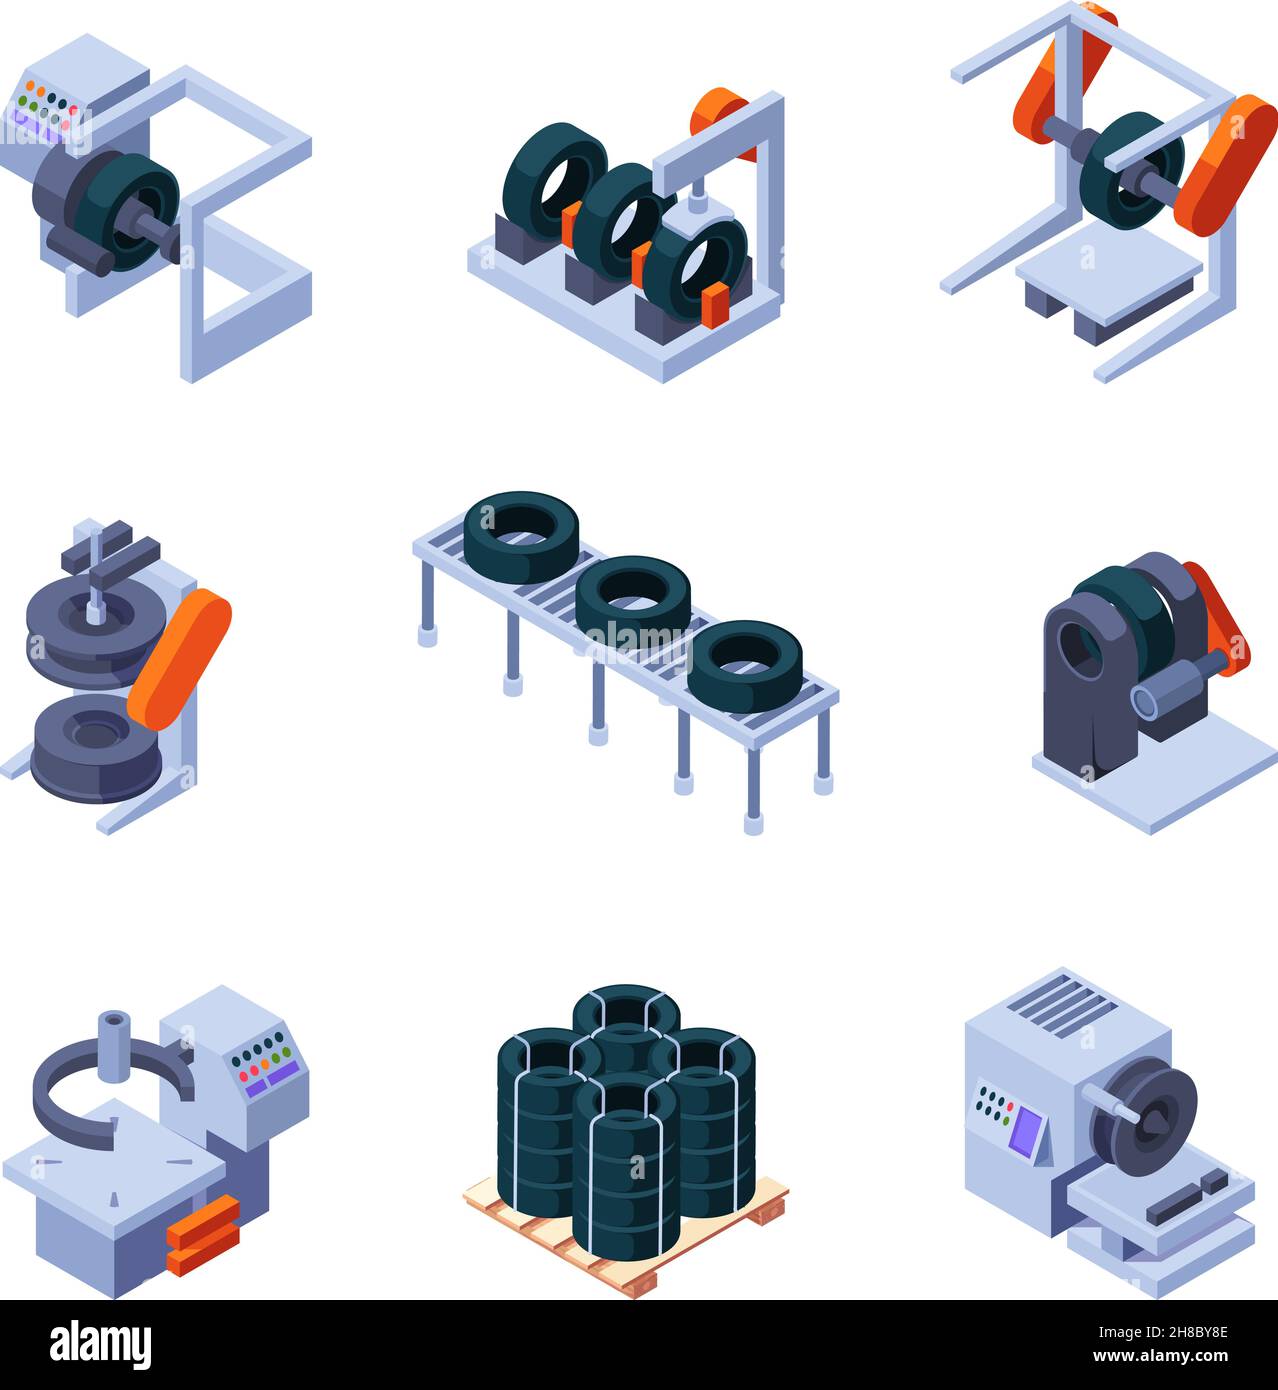 Reifen machen. Isometrischer Techniker verarbeitet Maschinen Stahlindustrie Reifen Produktionstechnologie grellen Vektor intelligente Dienstleistungen Stock Vektor